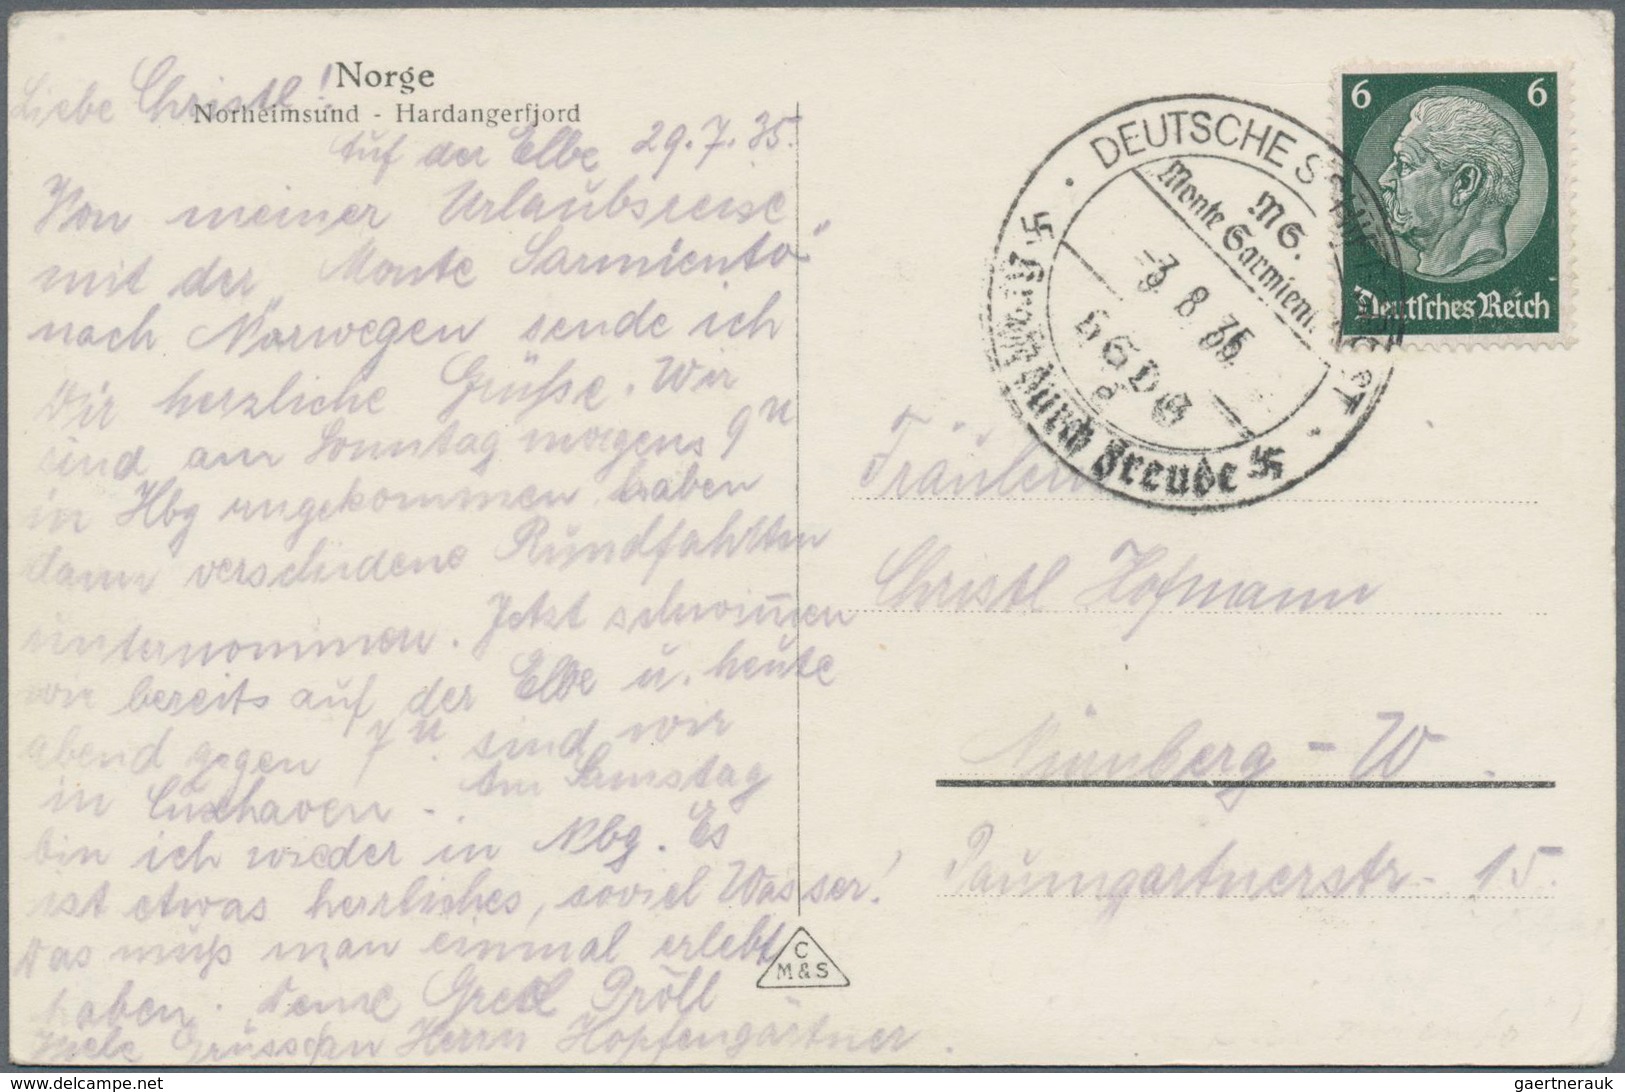 Deutsche Schiffspost im Ausland - Seepost: 1893/1936 (ca.), rd. 50 Belege mit teils interessanten Ab